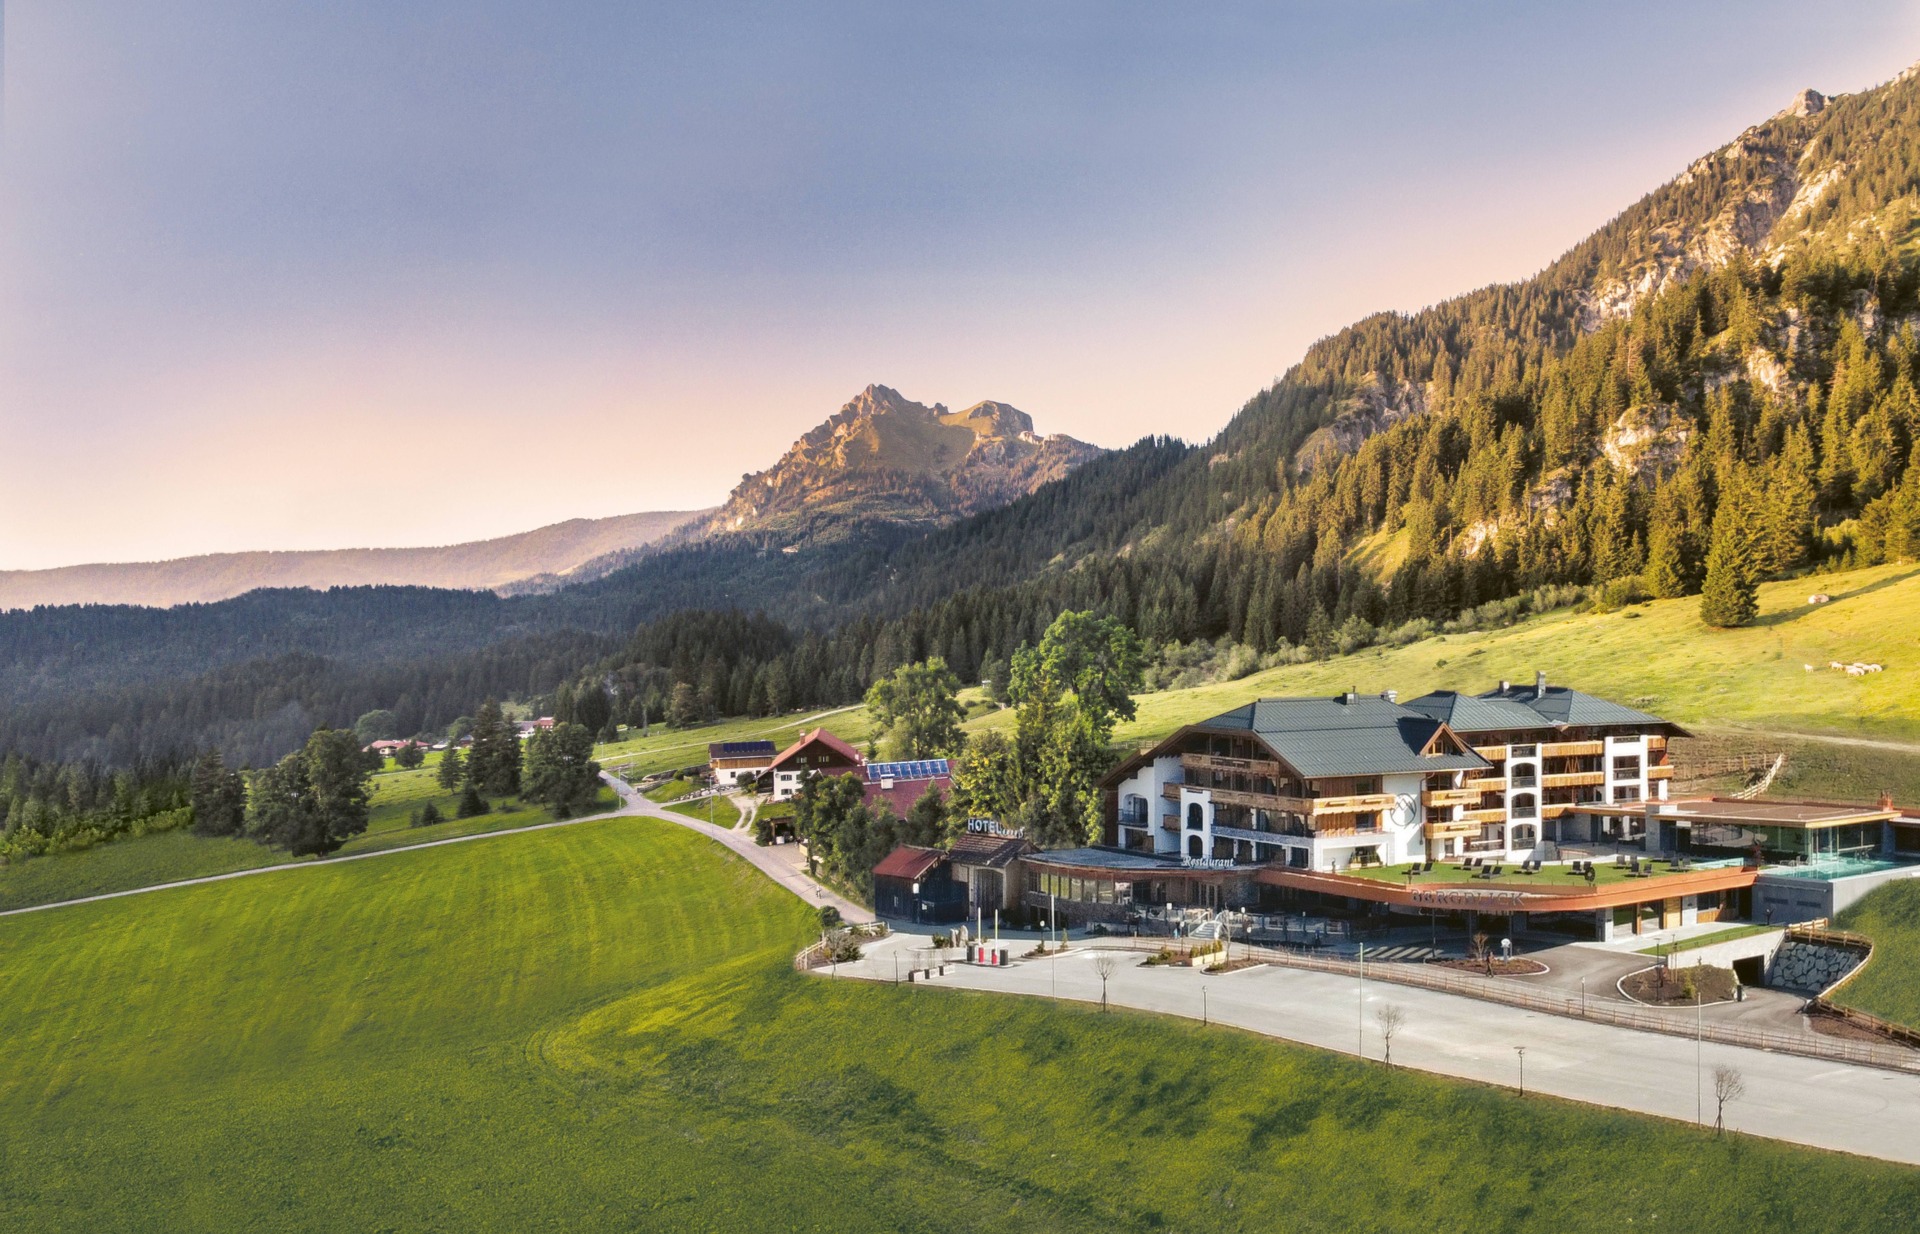 Bergblick Hotel & Spa wordt een culinaire bestemming